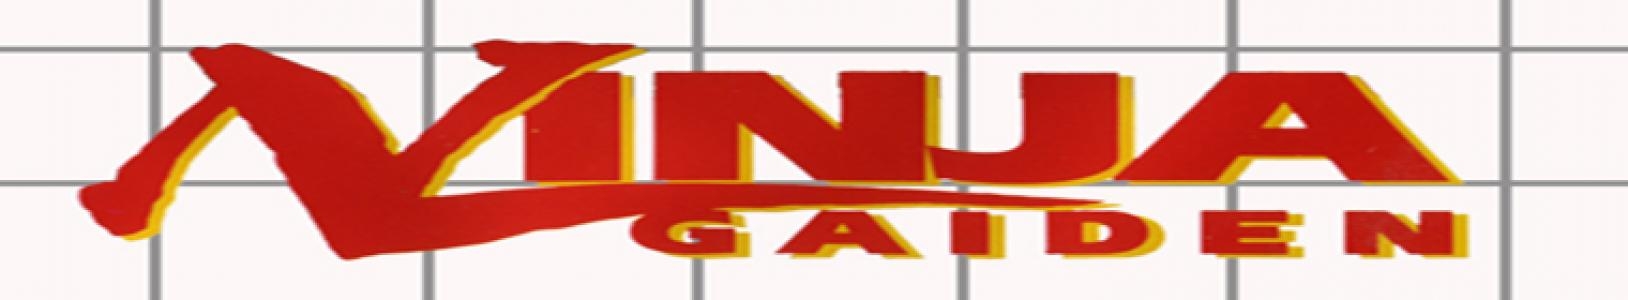 Ninja Gaiden banner